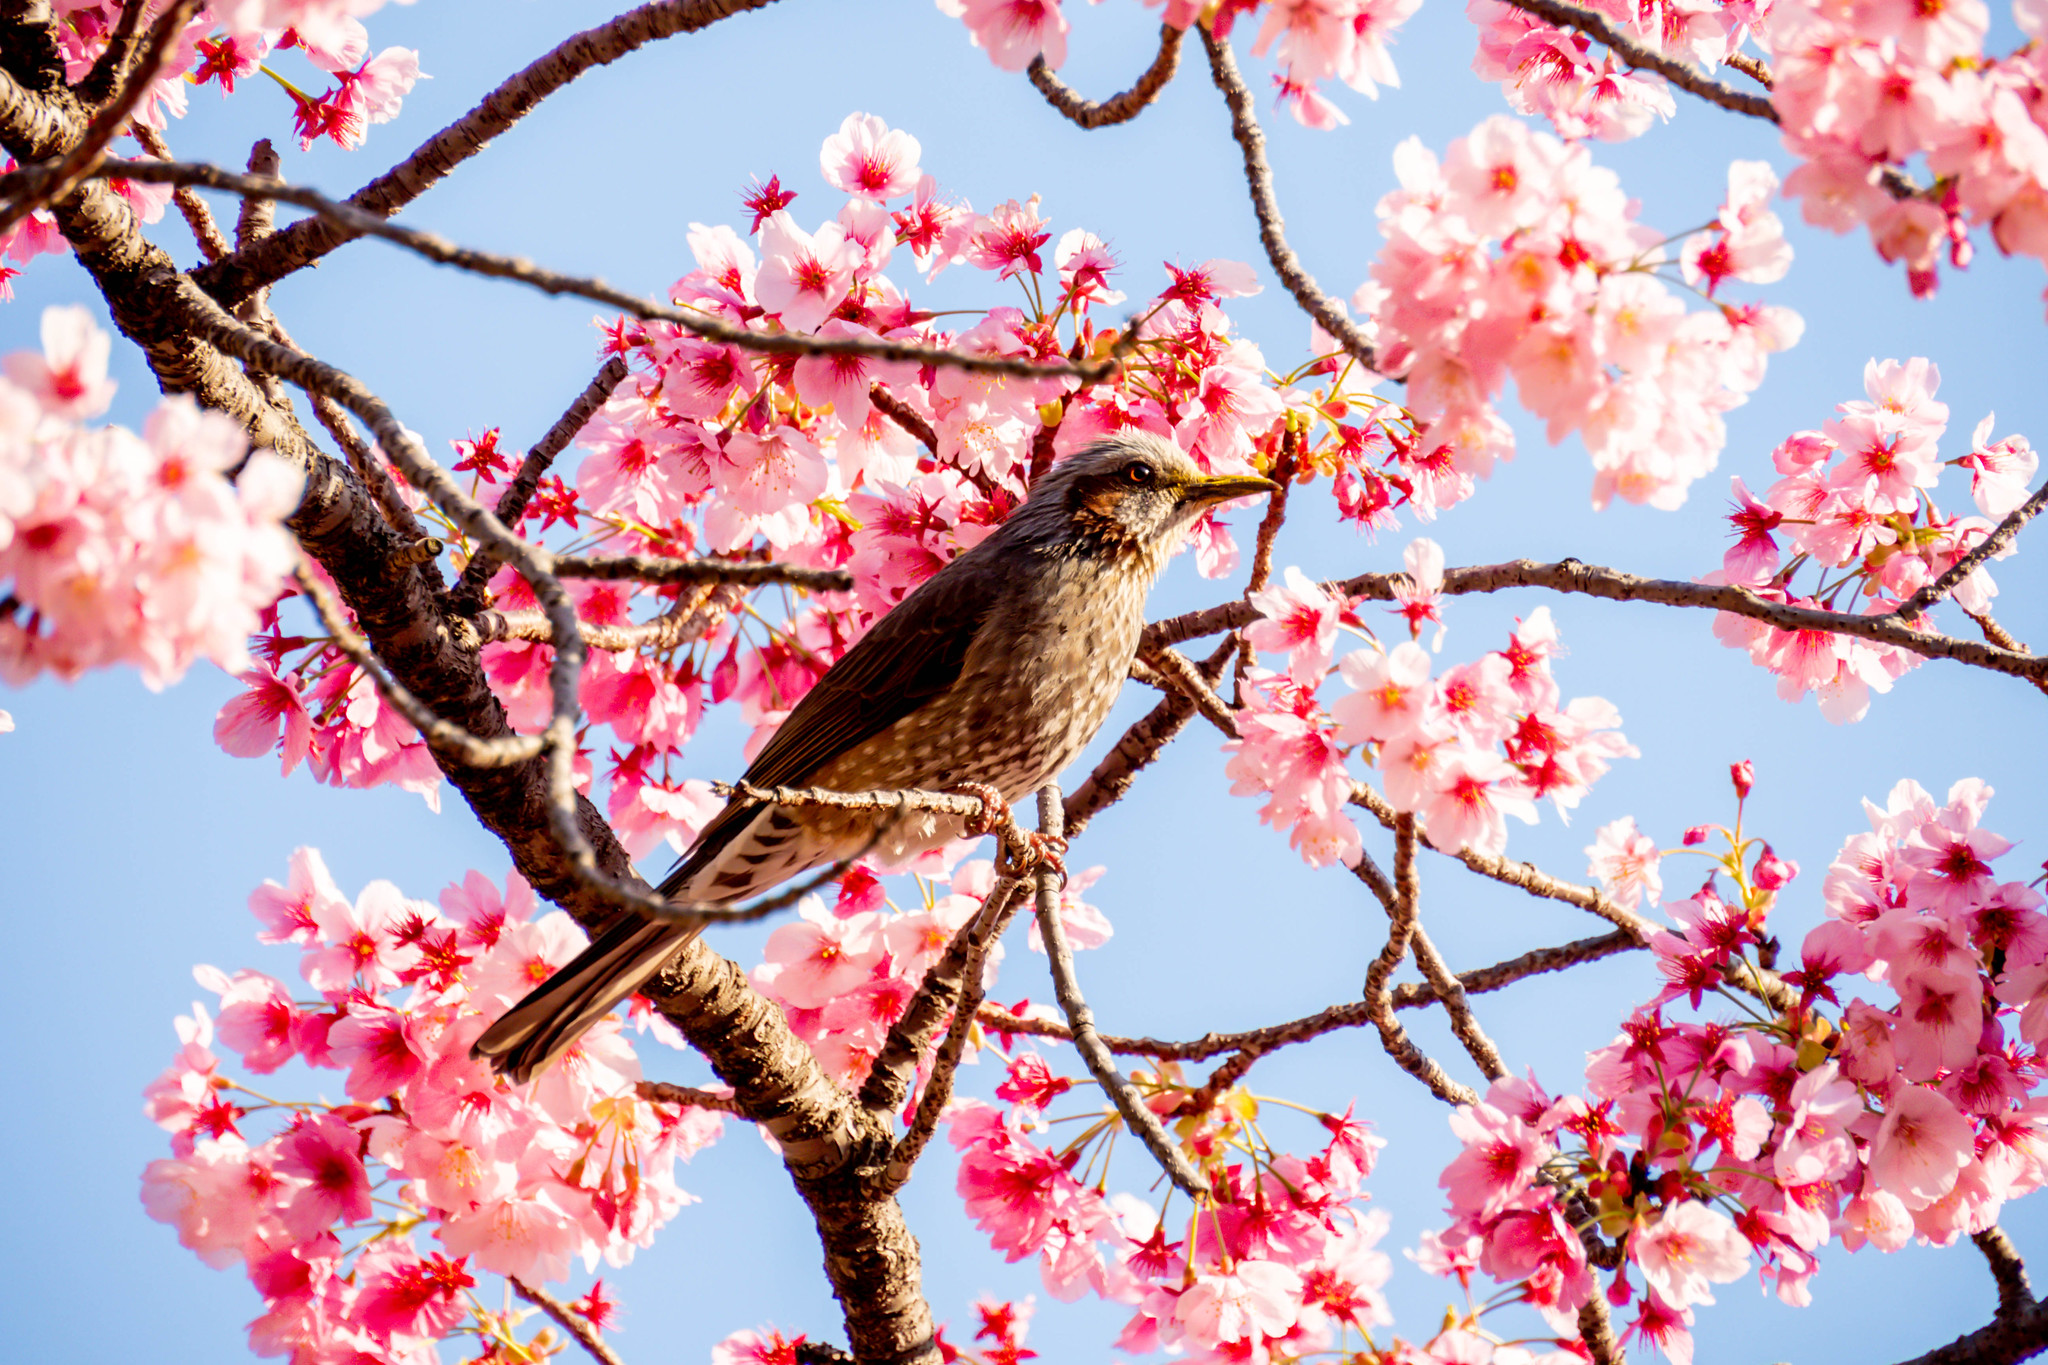 上野恩賜公園の桜とヒヨドリ #桜